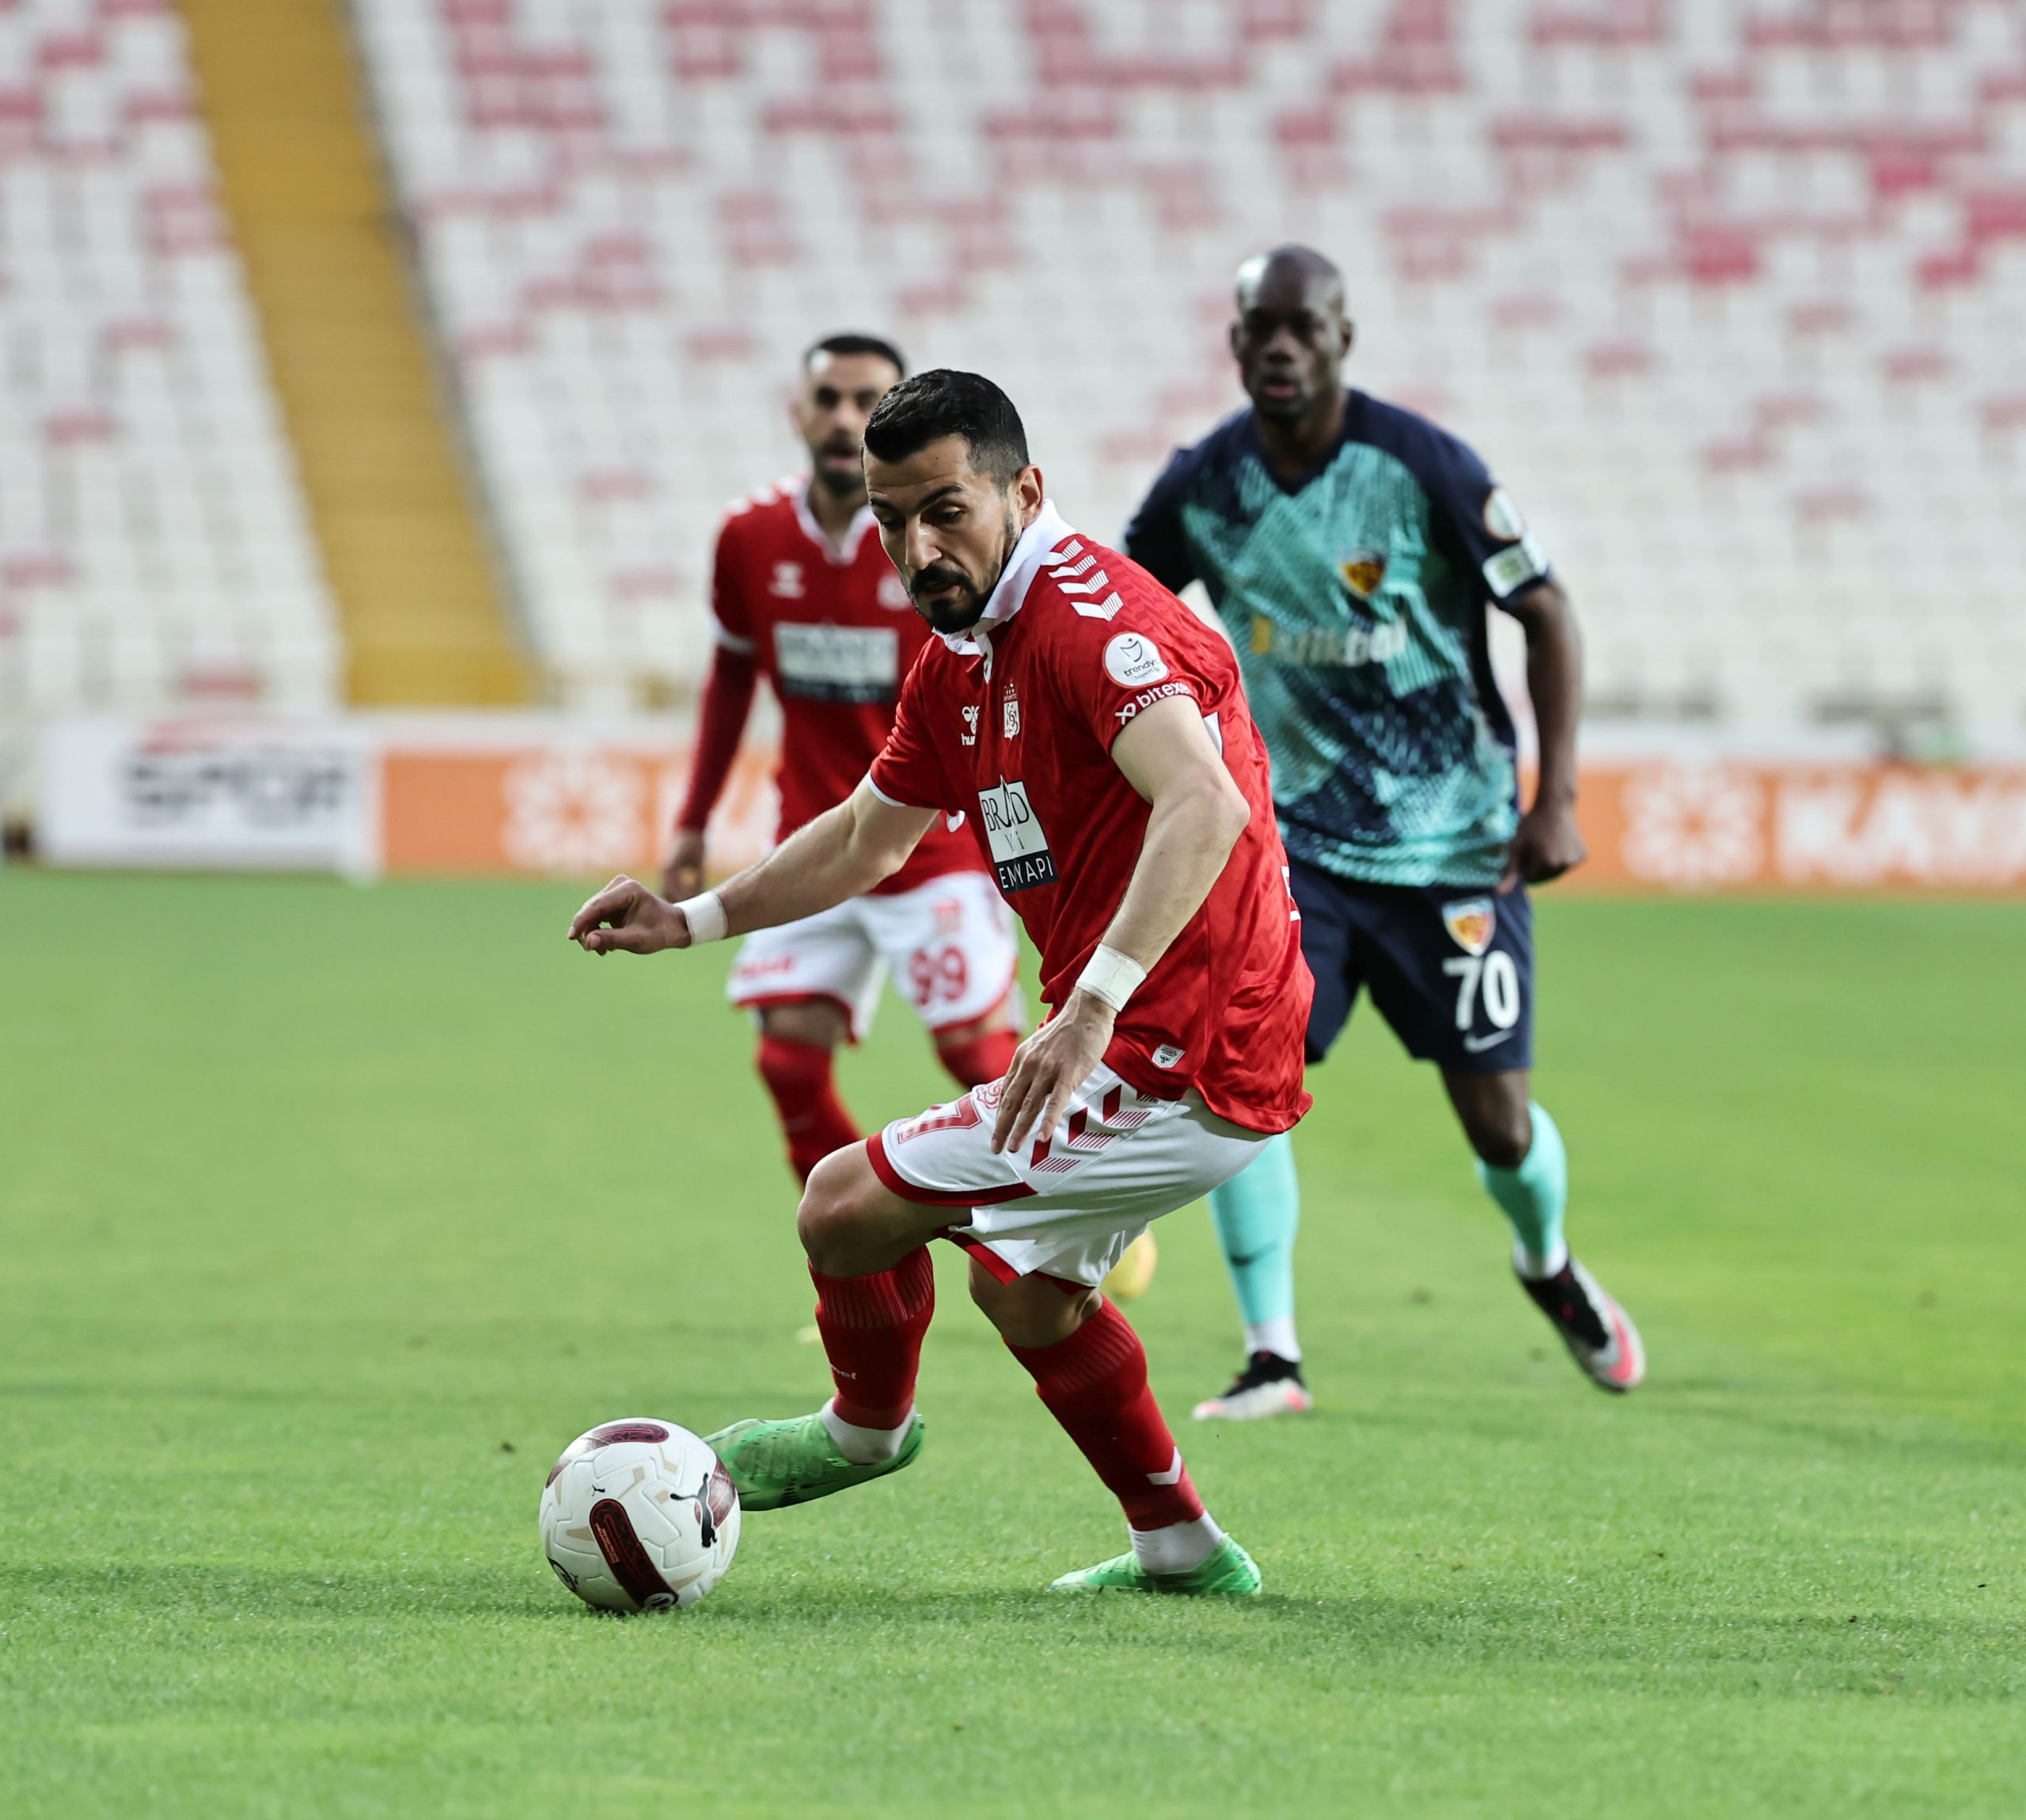 EMS Yapı Sivasspor 2-1 Mondihome Kayserispor